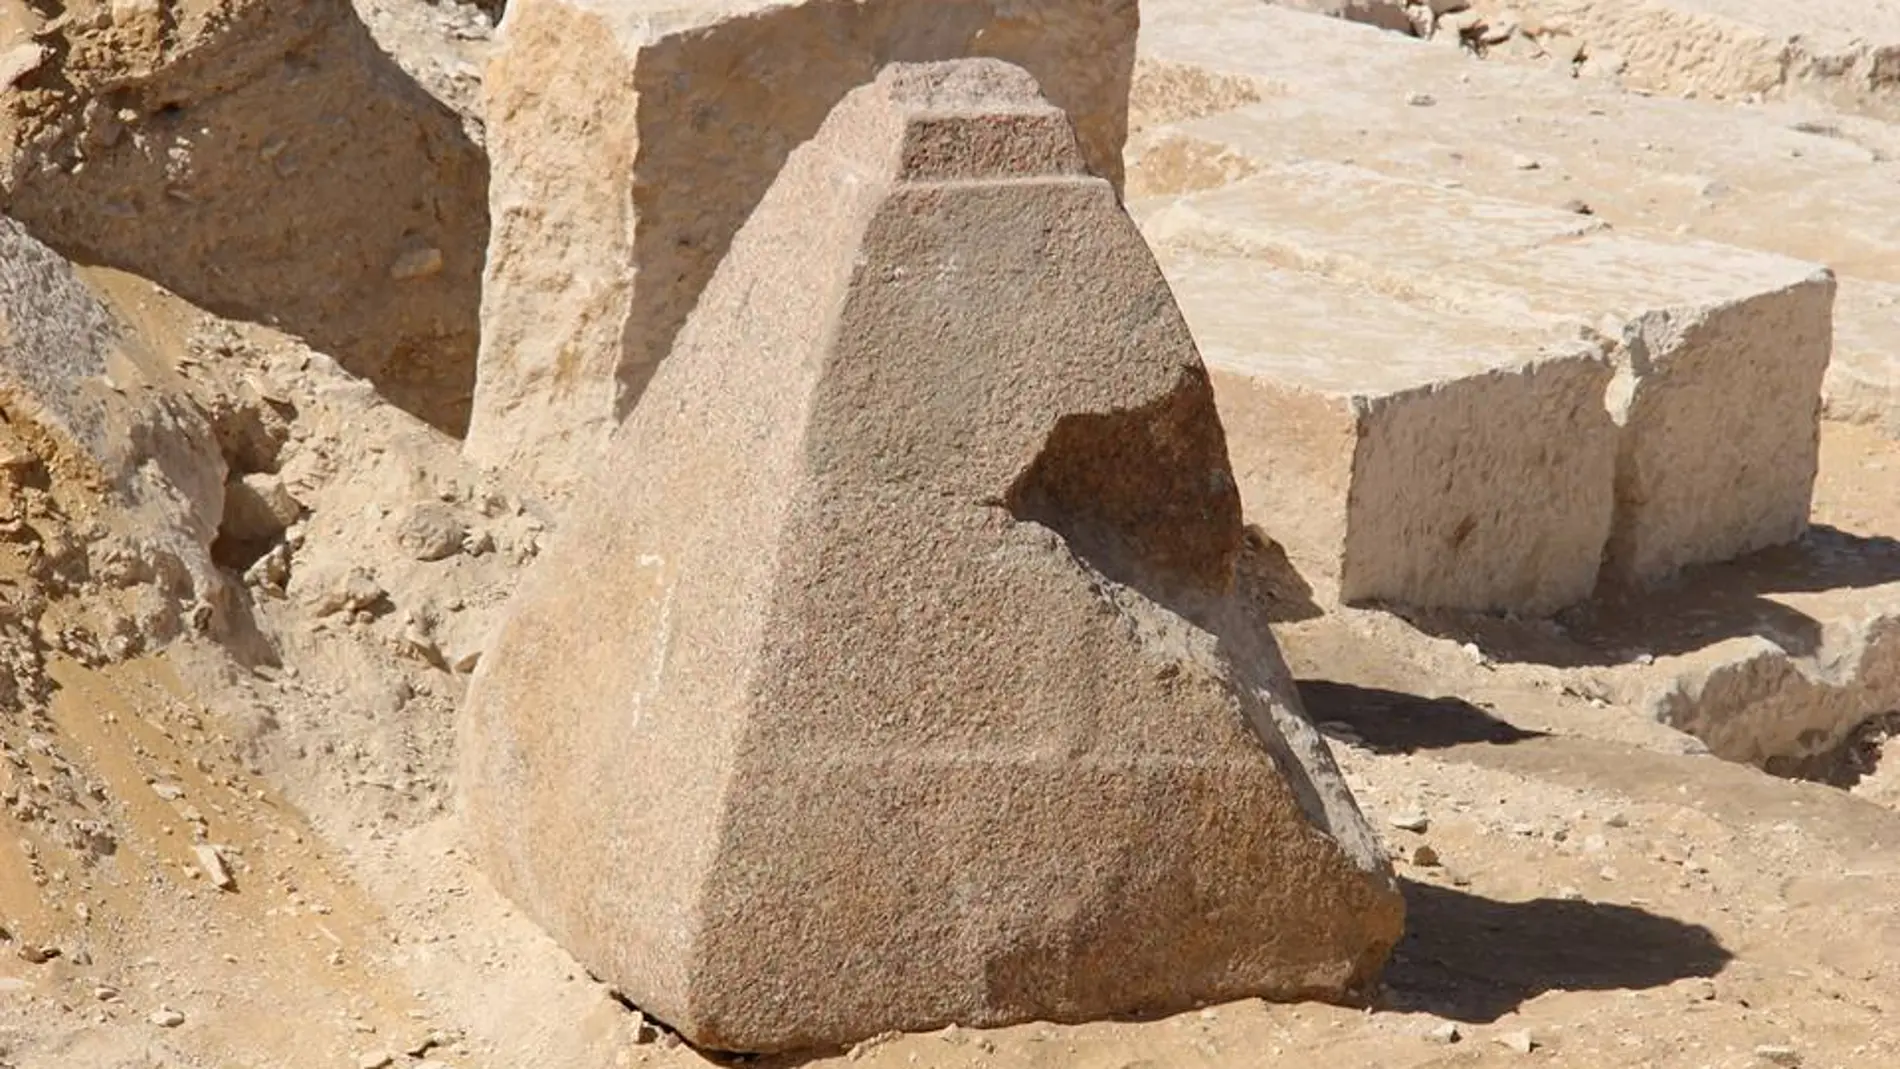 Descubierta una pirámide pequeña de granito rosado al sur de El Cairo